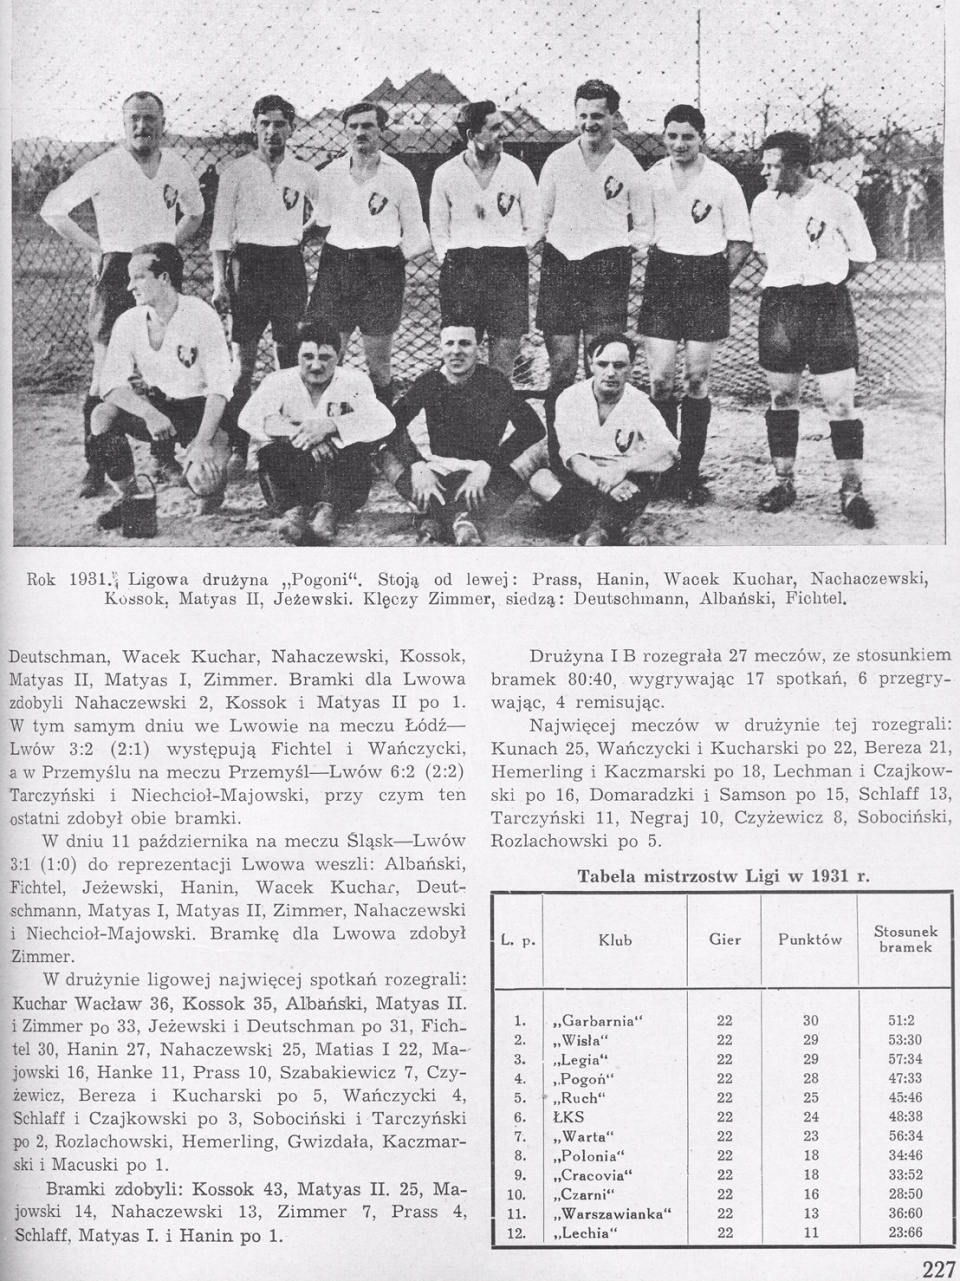 1931. Ligowa drużyna "Pogoni"